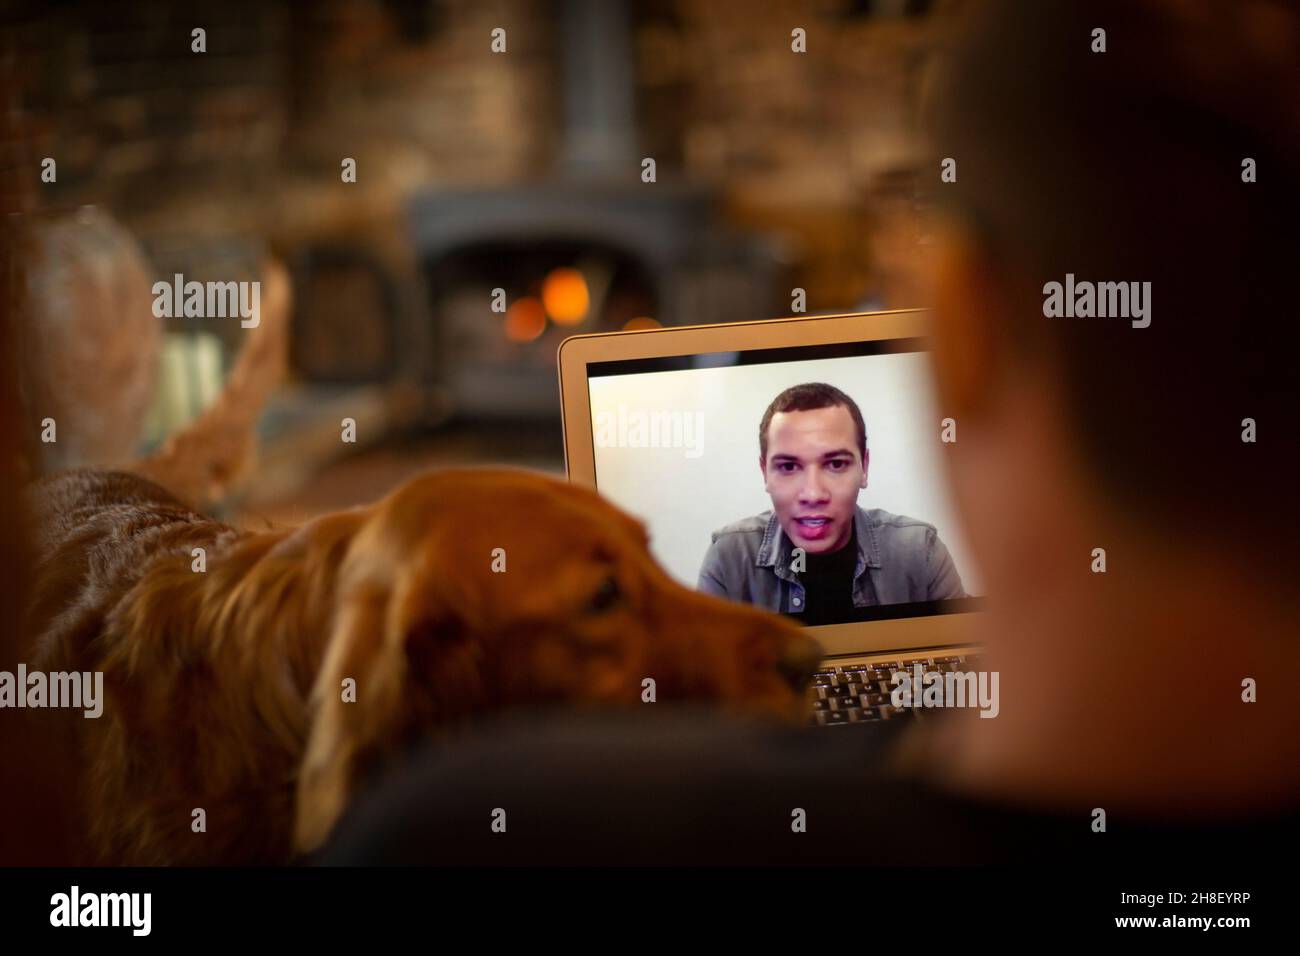 Homme avec chien chat vidéo avec un collègue sur l'écran de l'ordinateur portable Banque D'Images